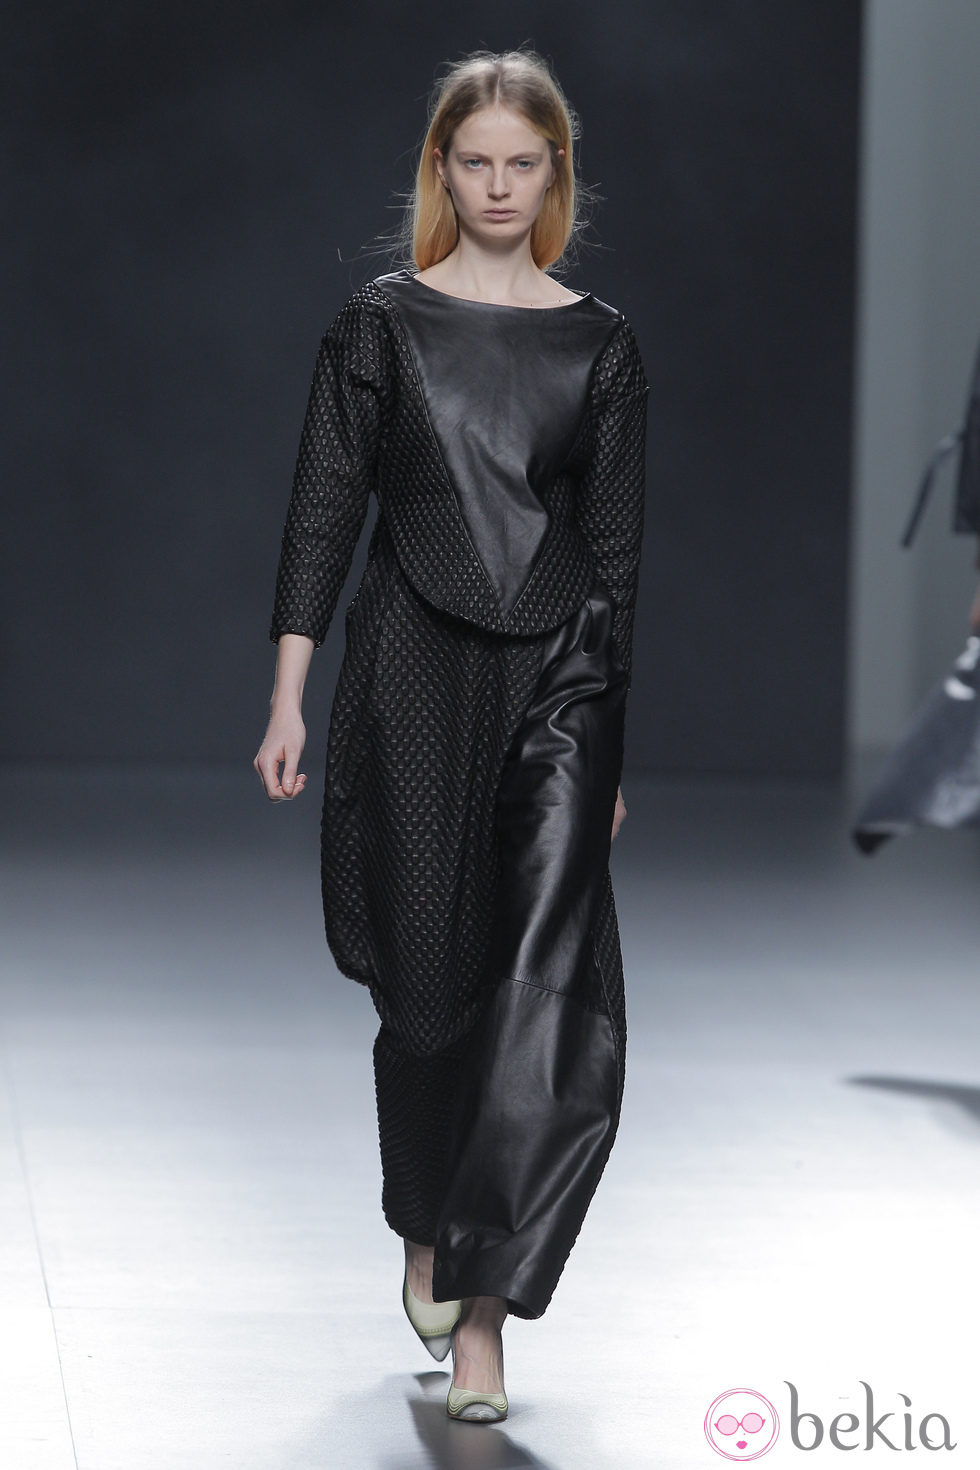 Vestido negro de cuero de la colección otoño/invierno 2013/2014 de Martín Lamothe en Madrid Fashion Week